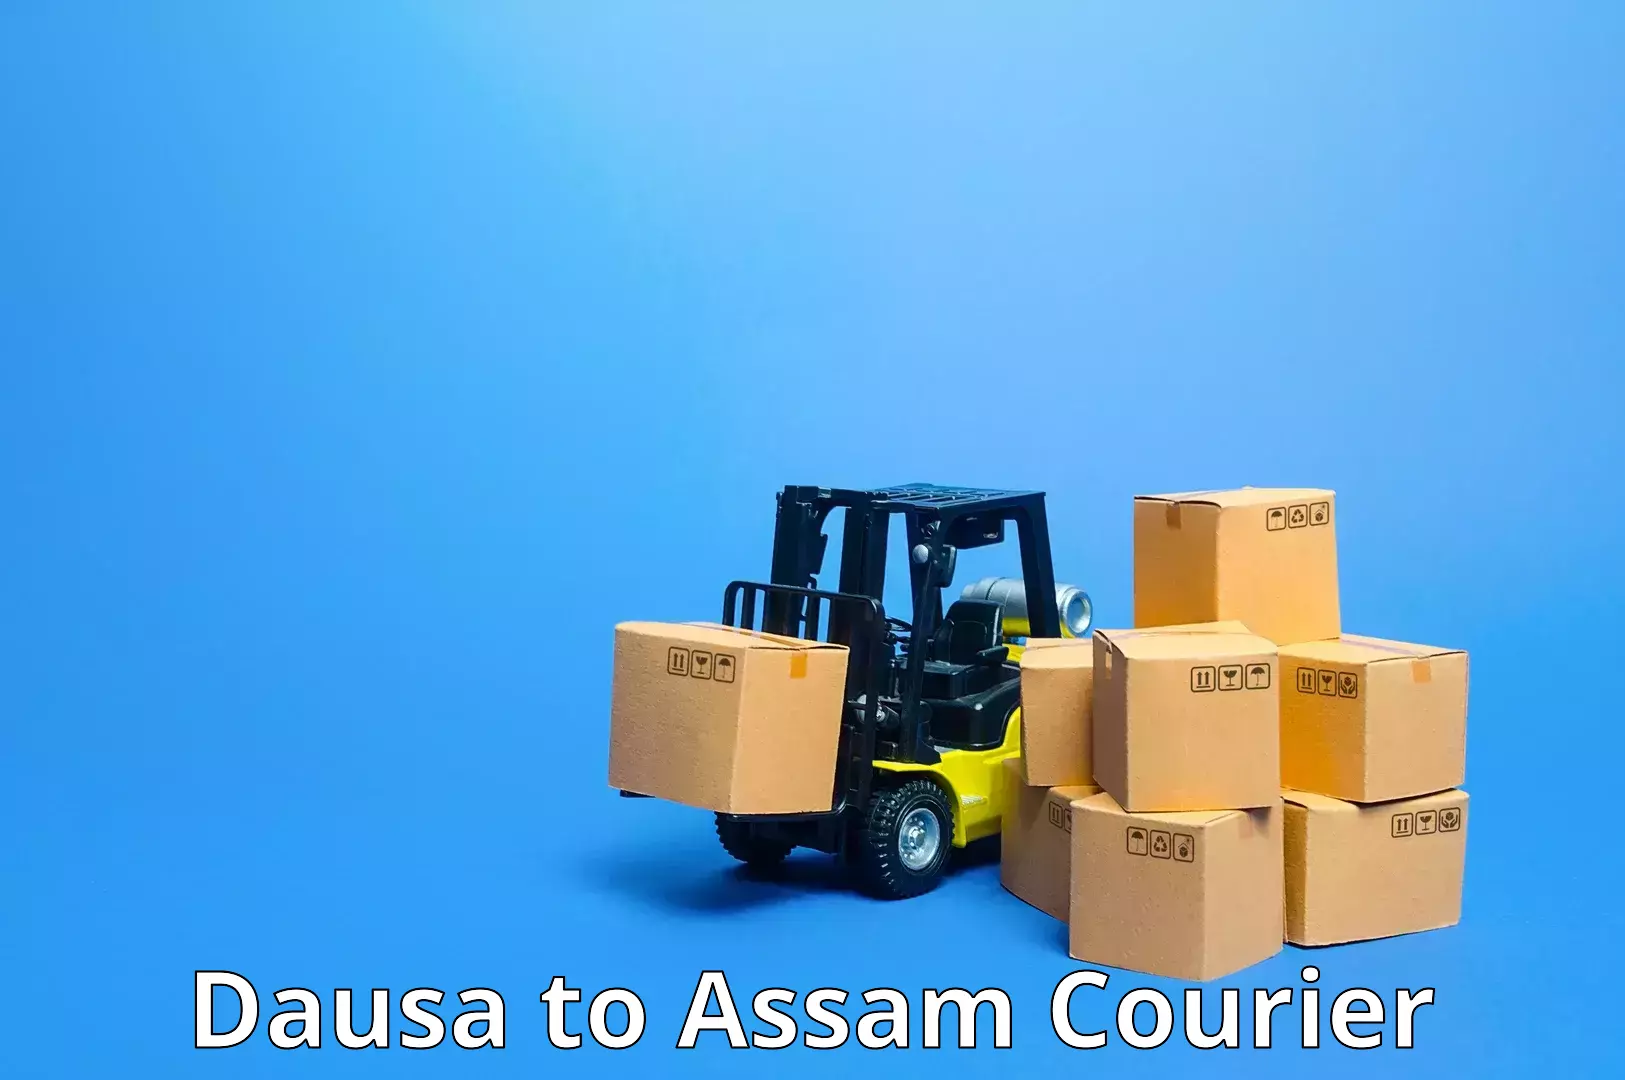 Residential courier service Dausa to Sivasagar